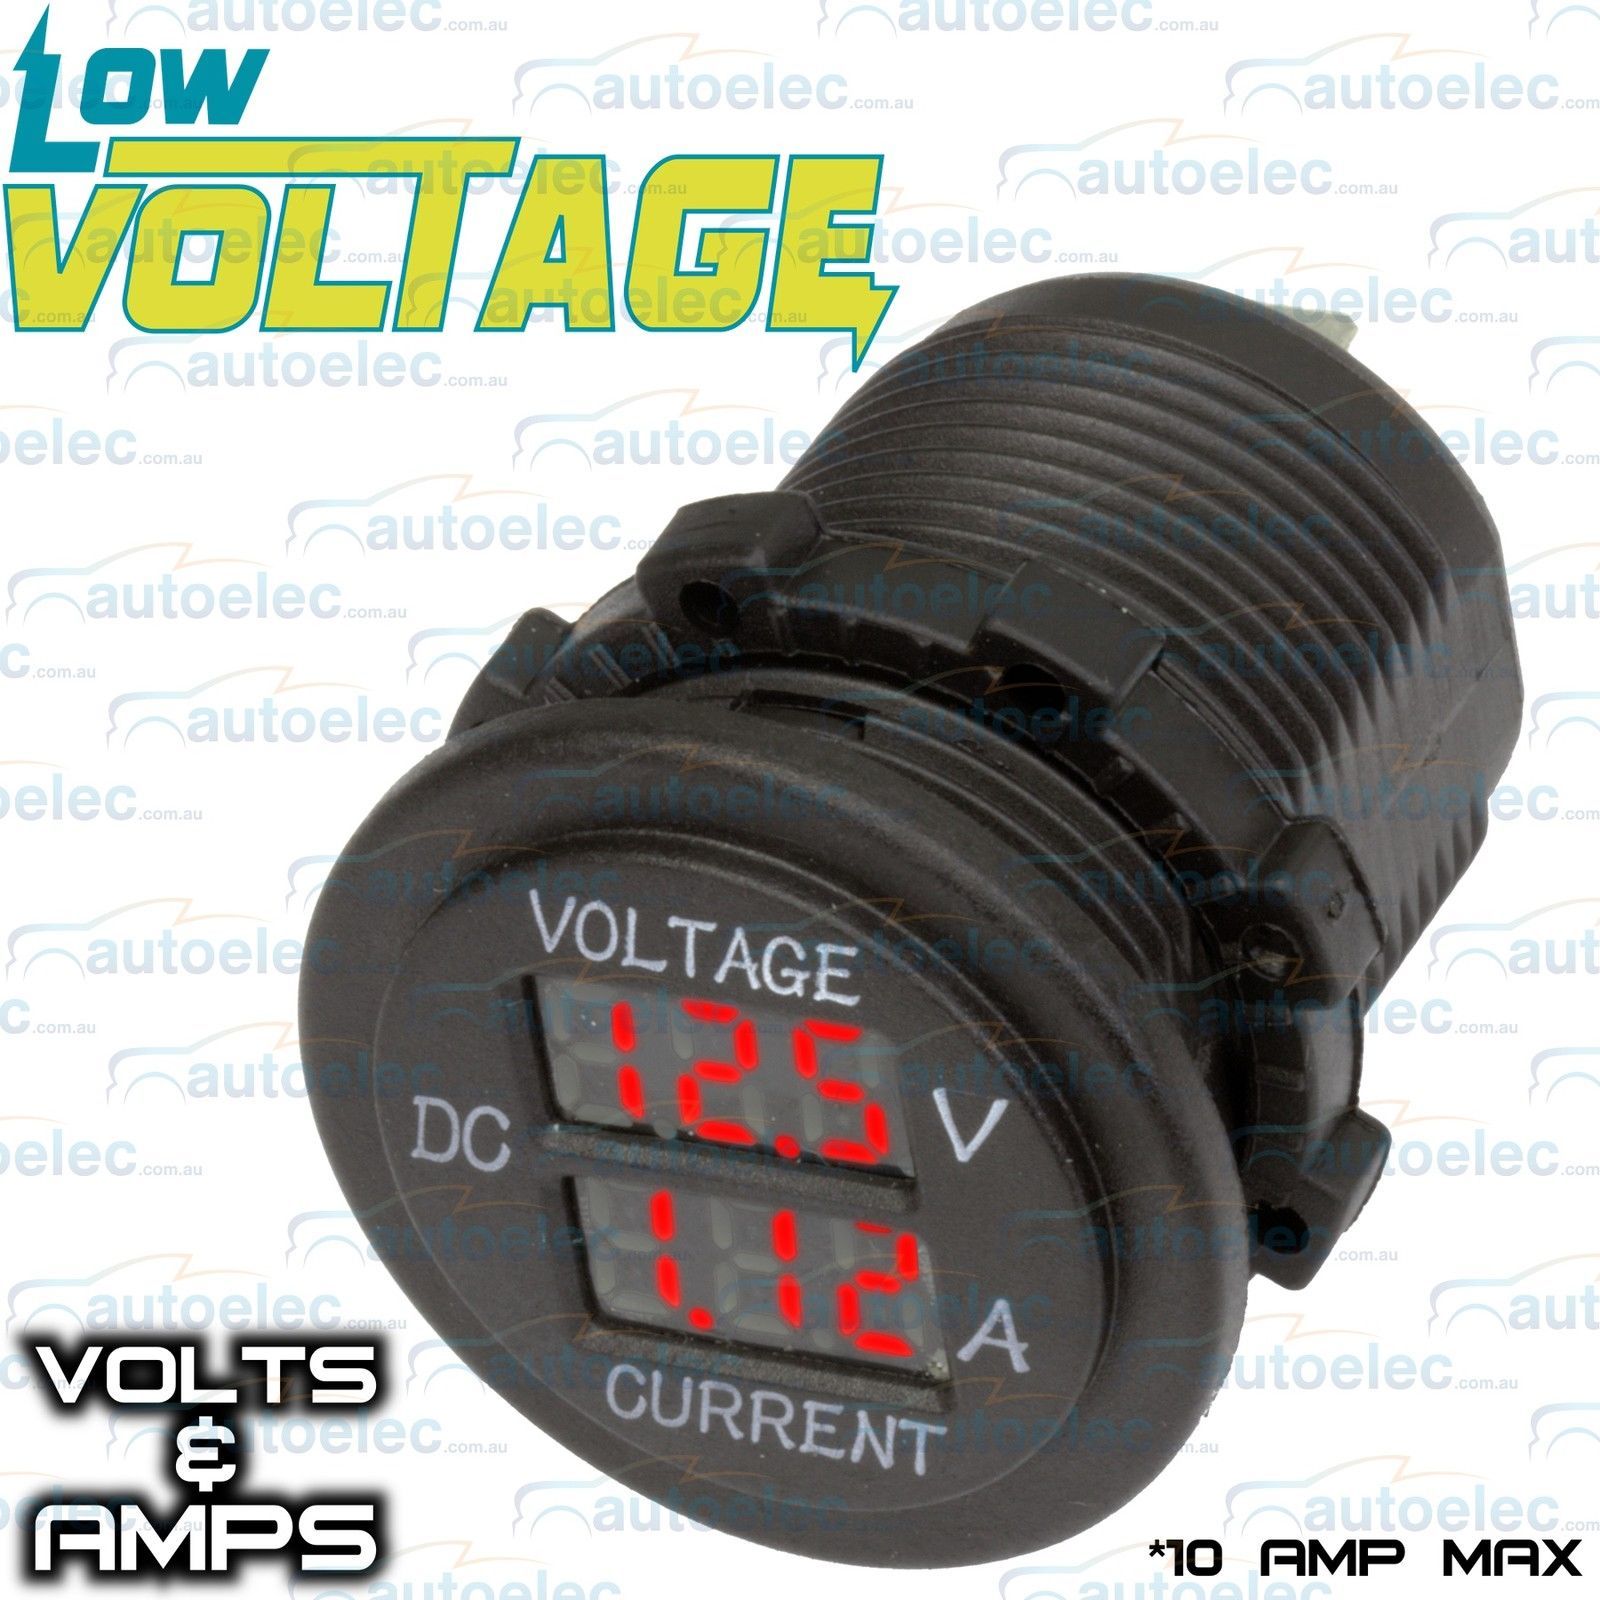 VOLT & AMP METER VOLTMETER AMMETER FLUSH MOUNT 12V VOLT ... auto meter gauges wiring diagram 